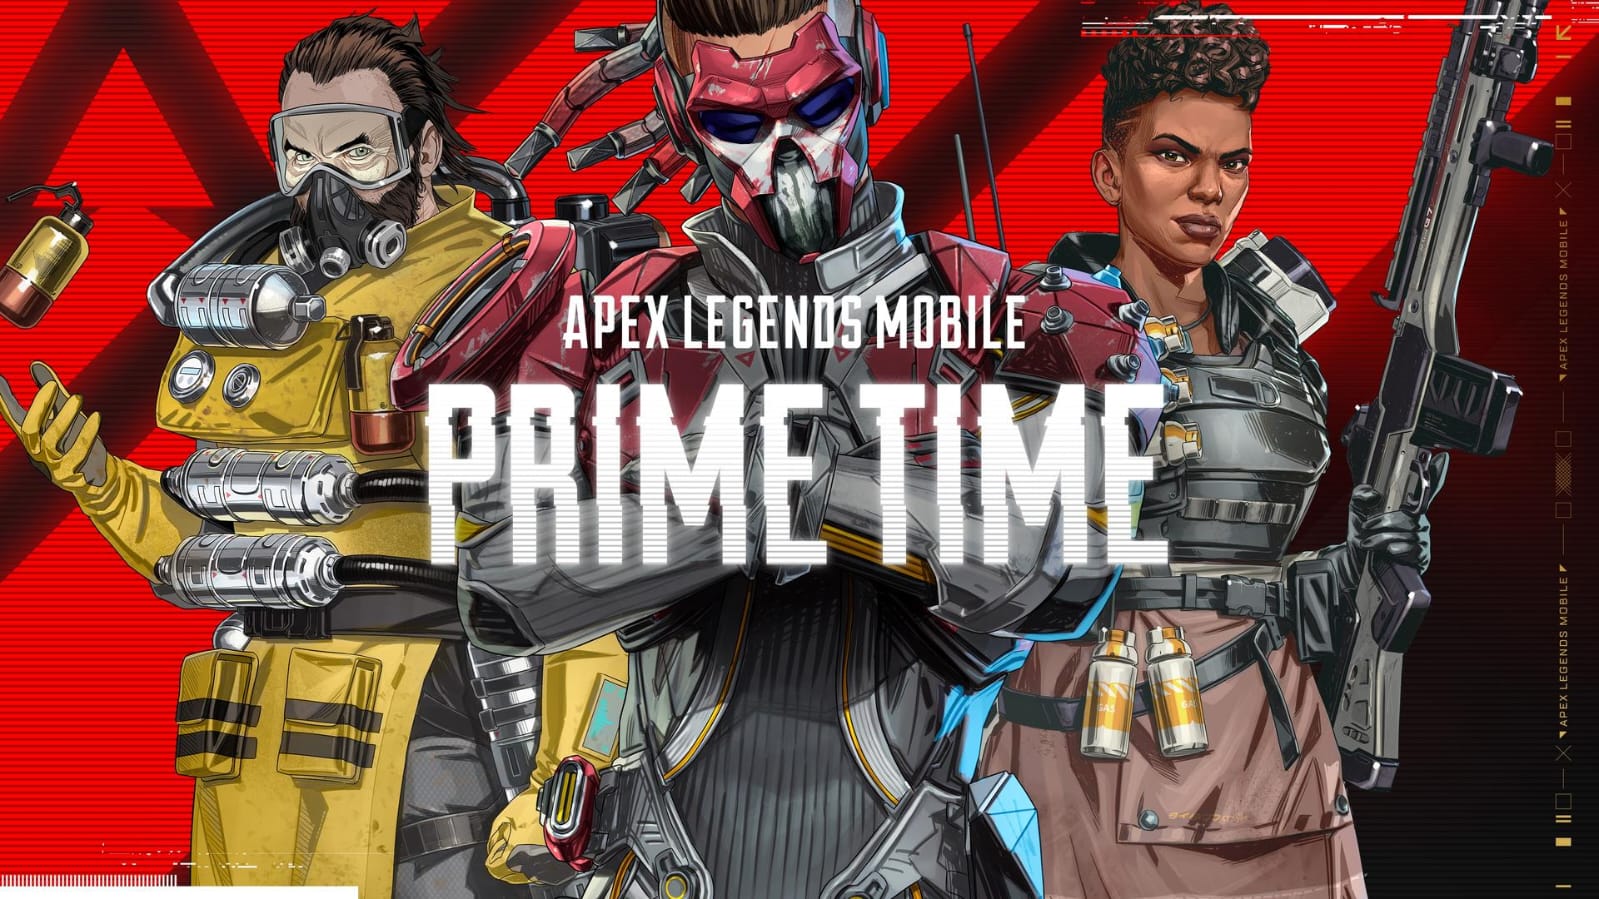 Hadir di Andorid dan iOS, Apex Legends Mobile Bisa Dimainkan Secara Gratis